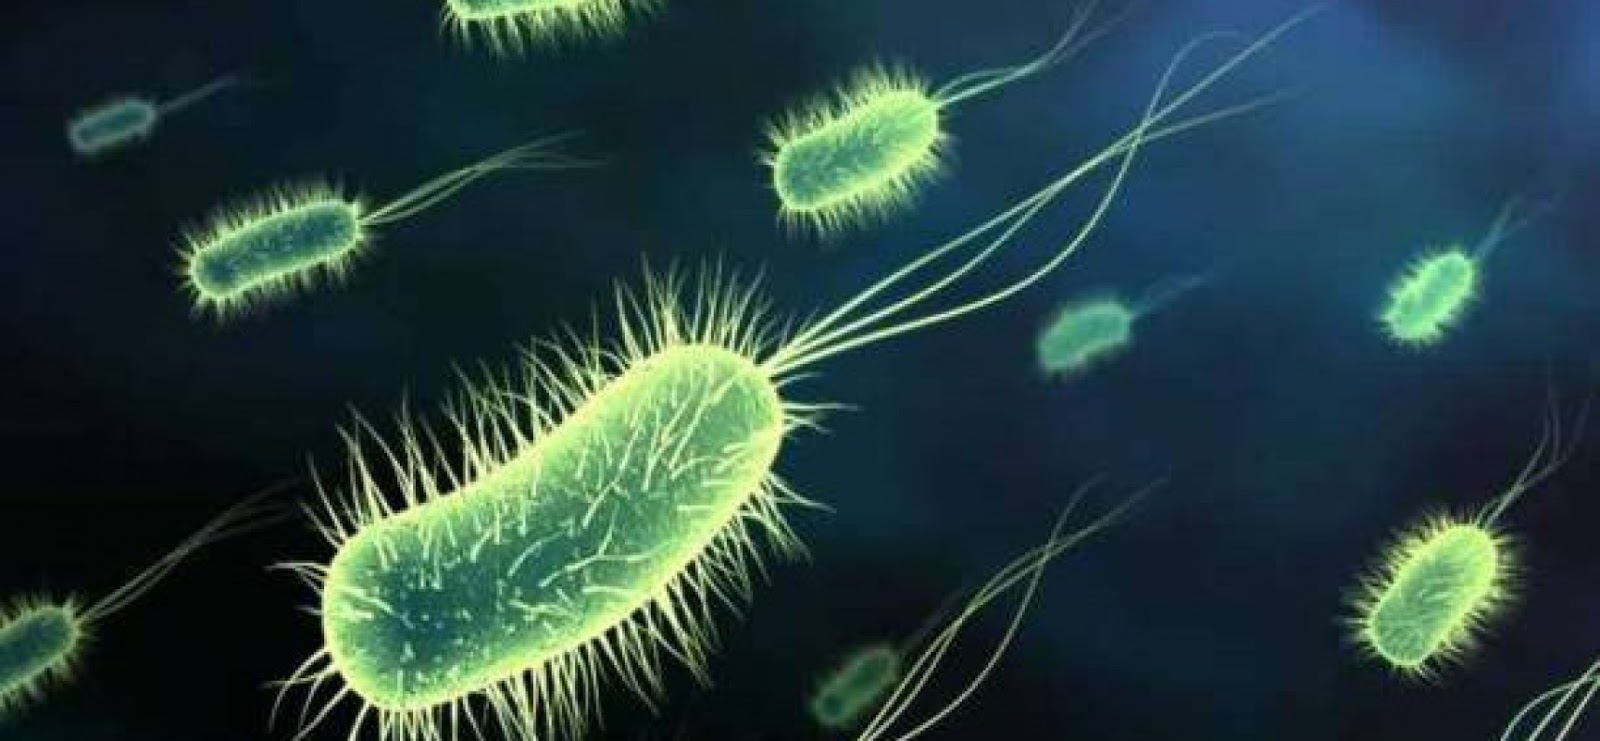 Πού συχνάζουν τα περισσότερα μικρόβια;